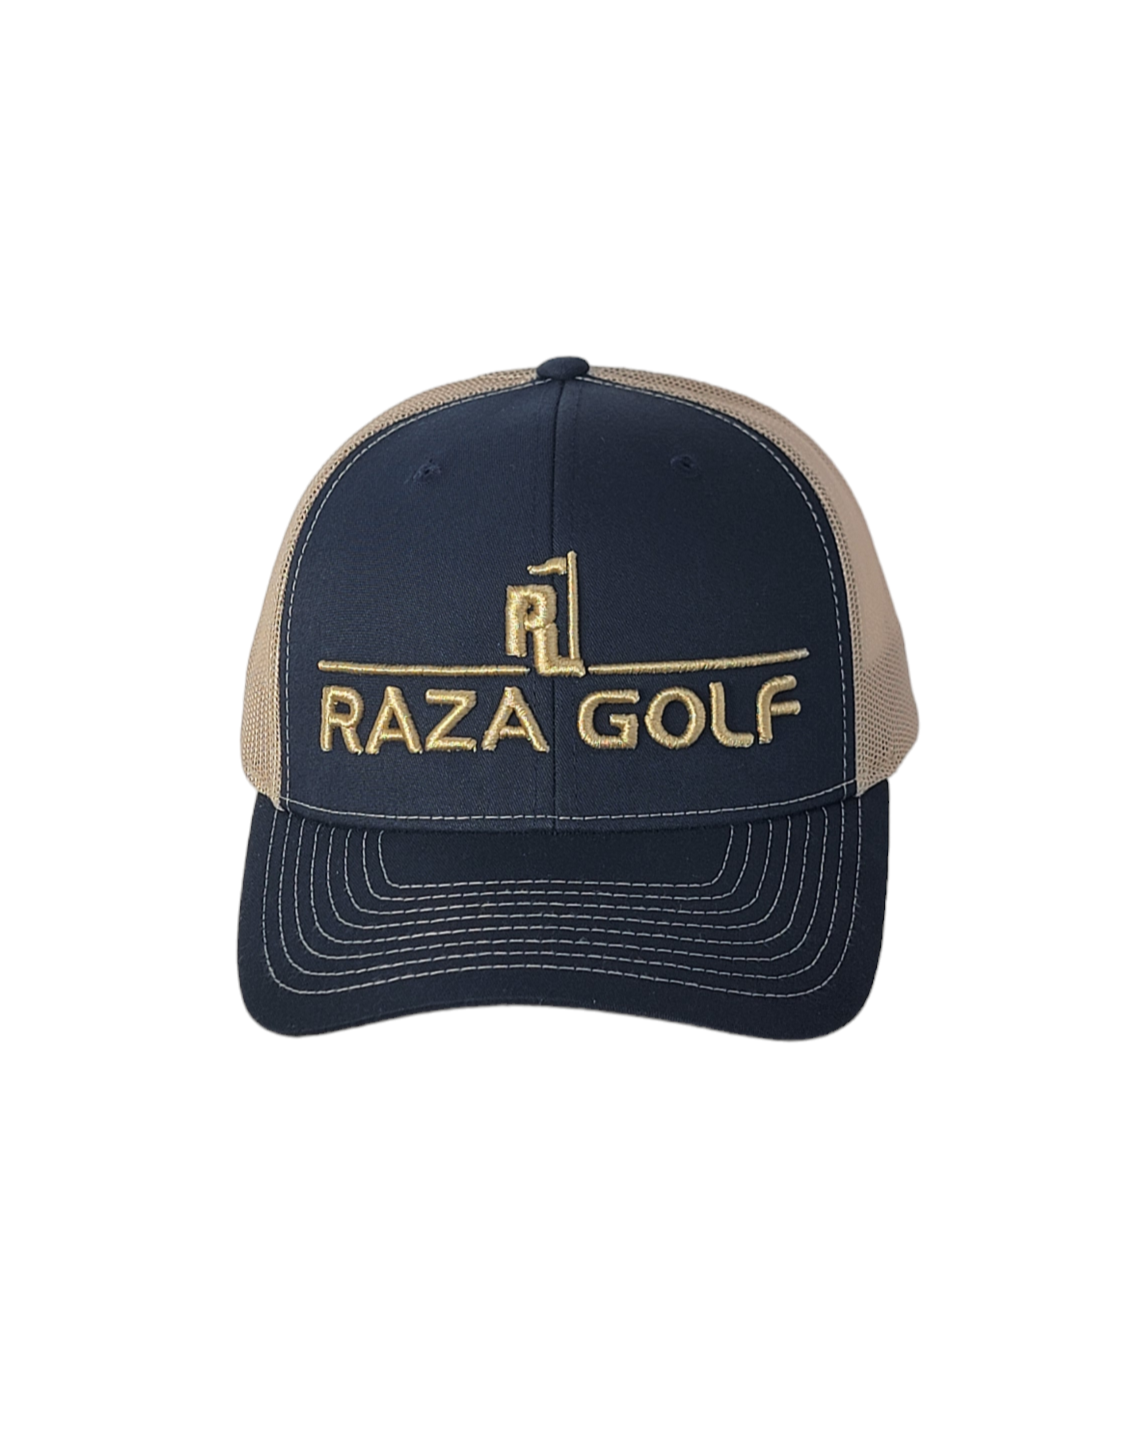 Raza Golf Navy/Khaki Linear Trucker Hat